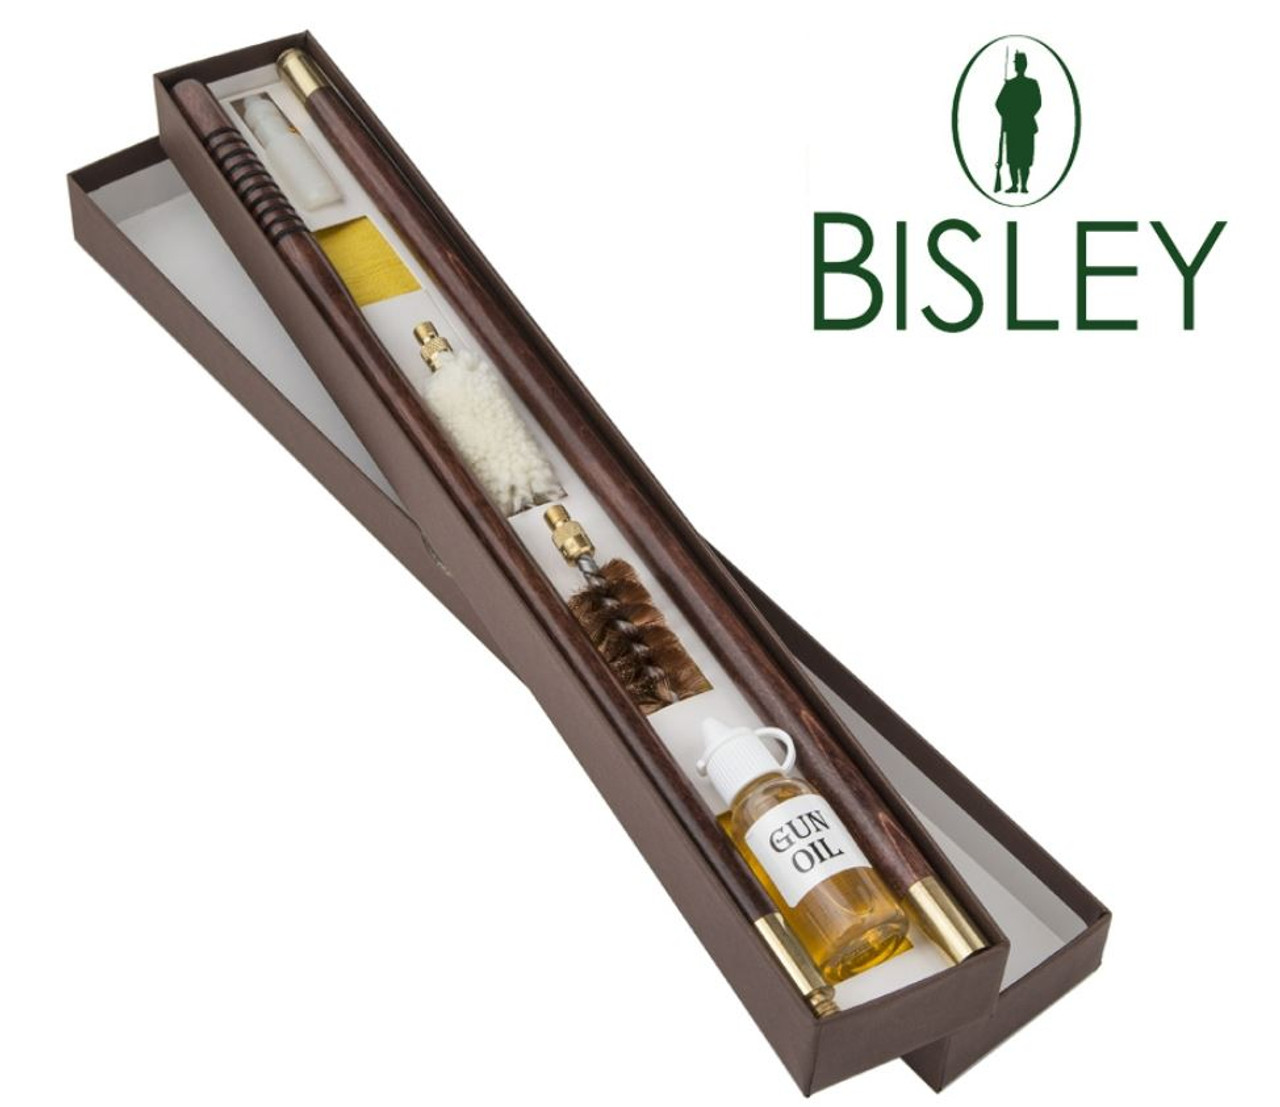 Bisley Boxed 12 Gauge Shotgun Cleaning Kit